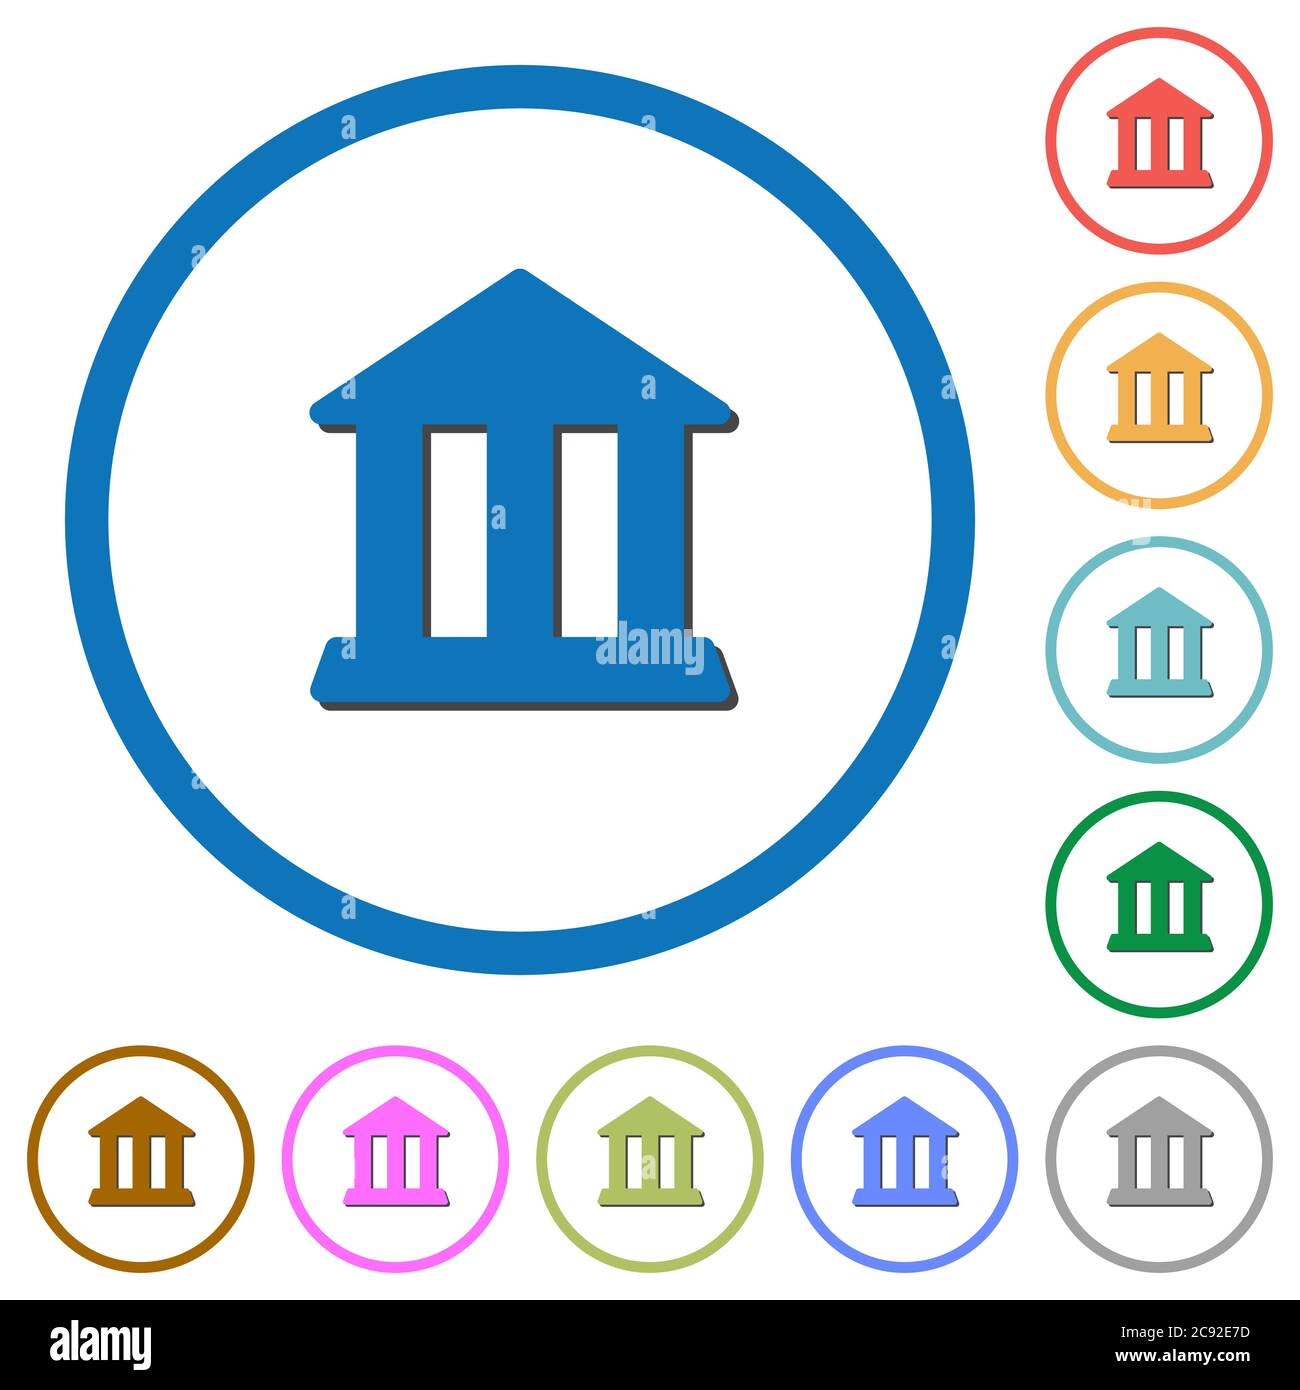 Icone vettoriali a colori piatti per uffici bancari con ombre in contorni rotondi su sfondo bianco Illustrazione Vettoriale